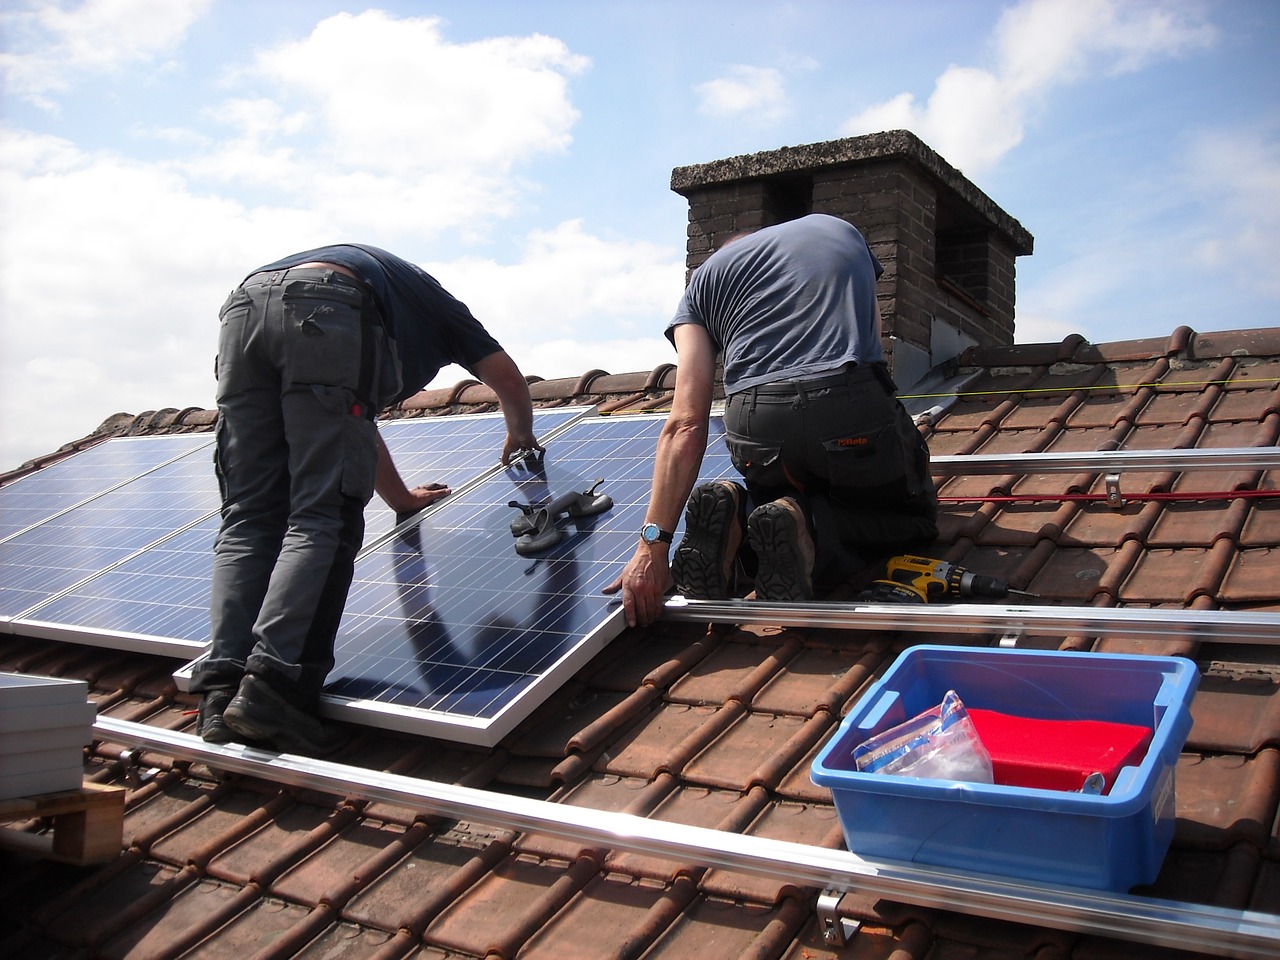 Aurinkopaneeli voidaan asentaa omakotitalon katolle helposti